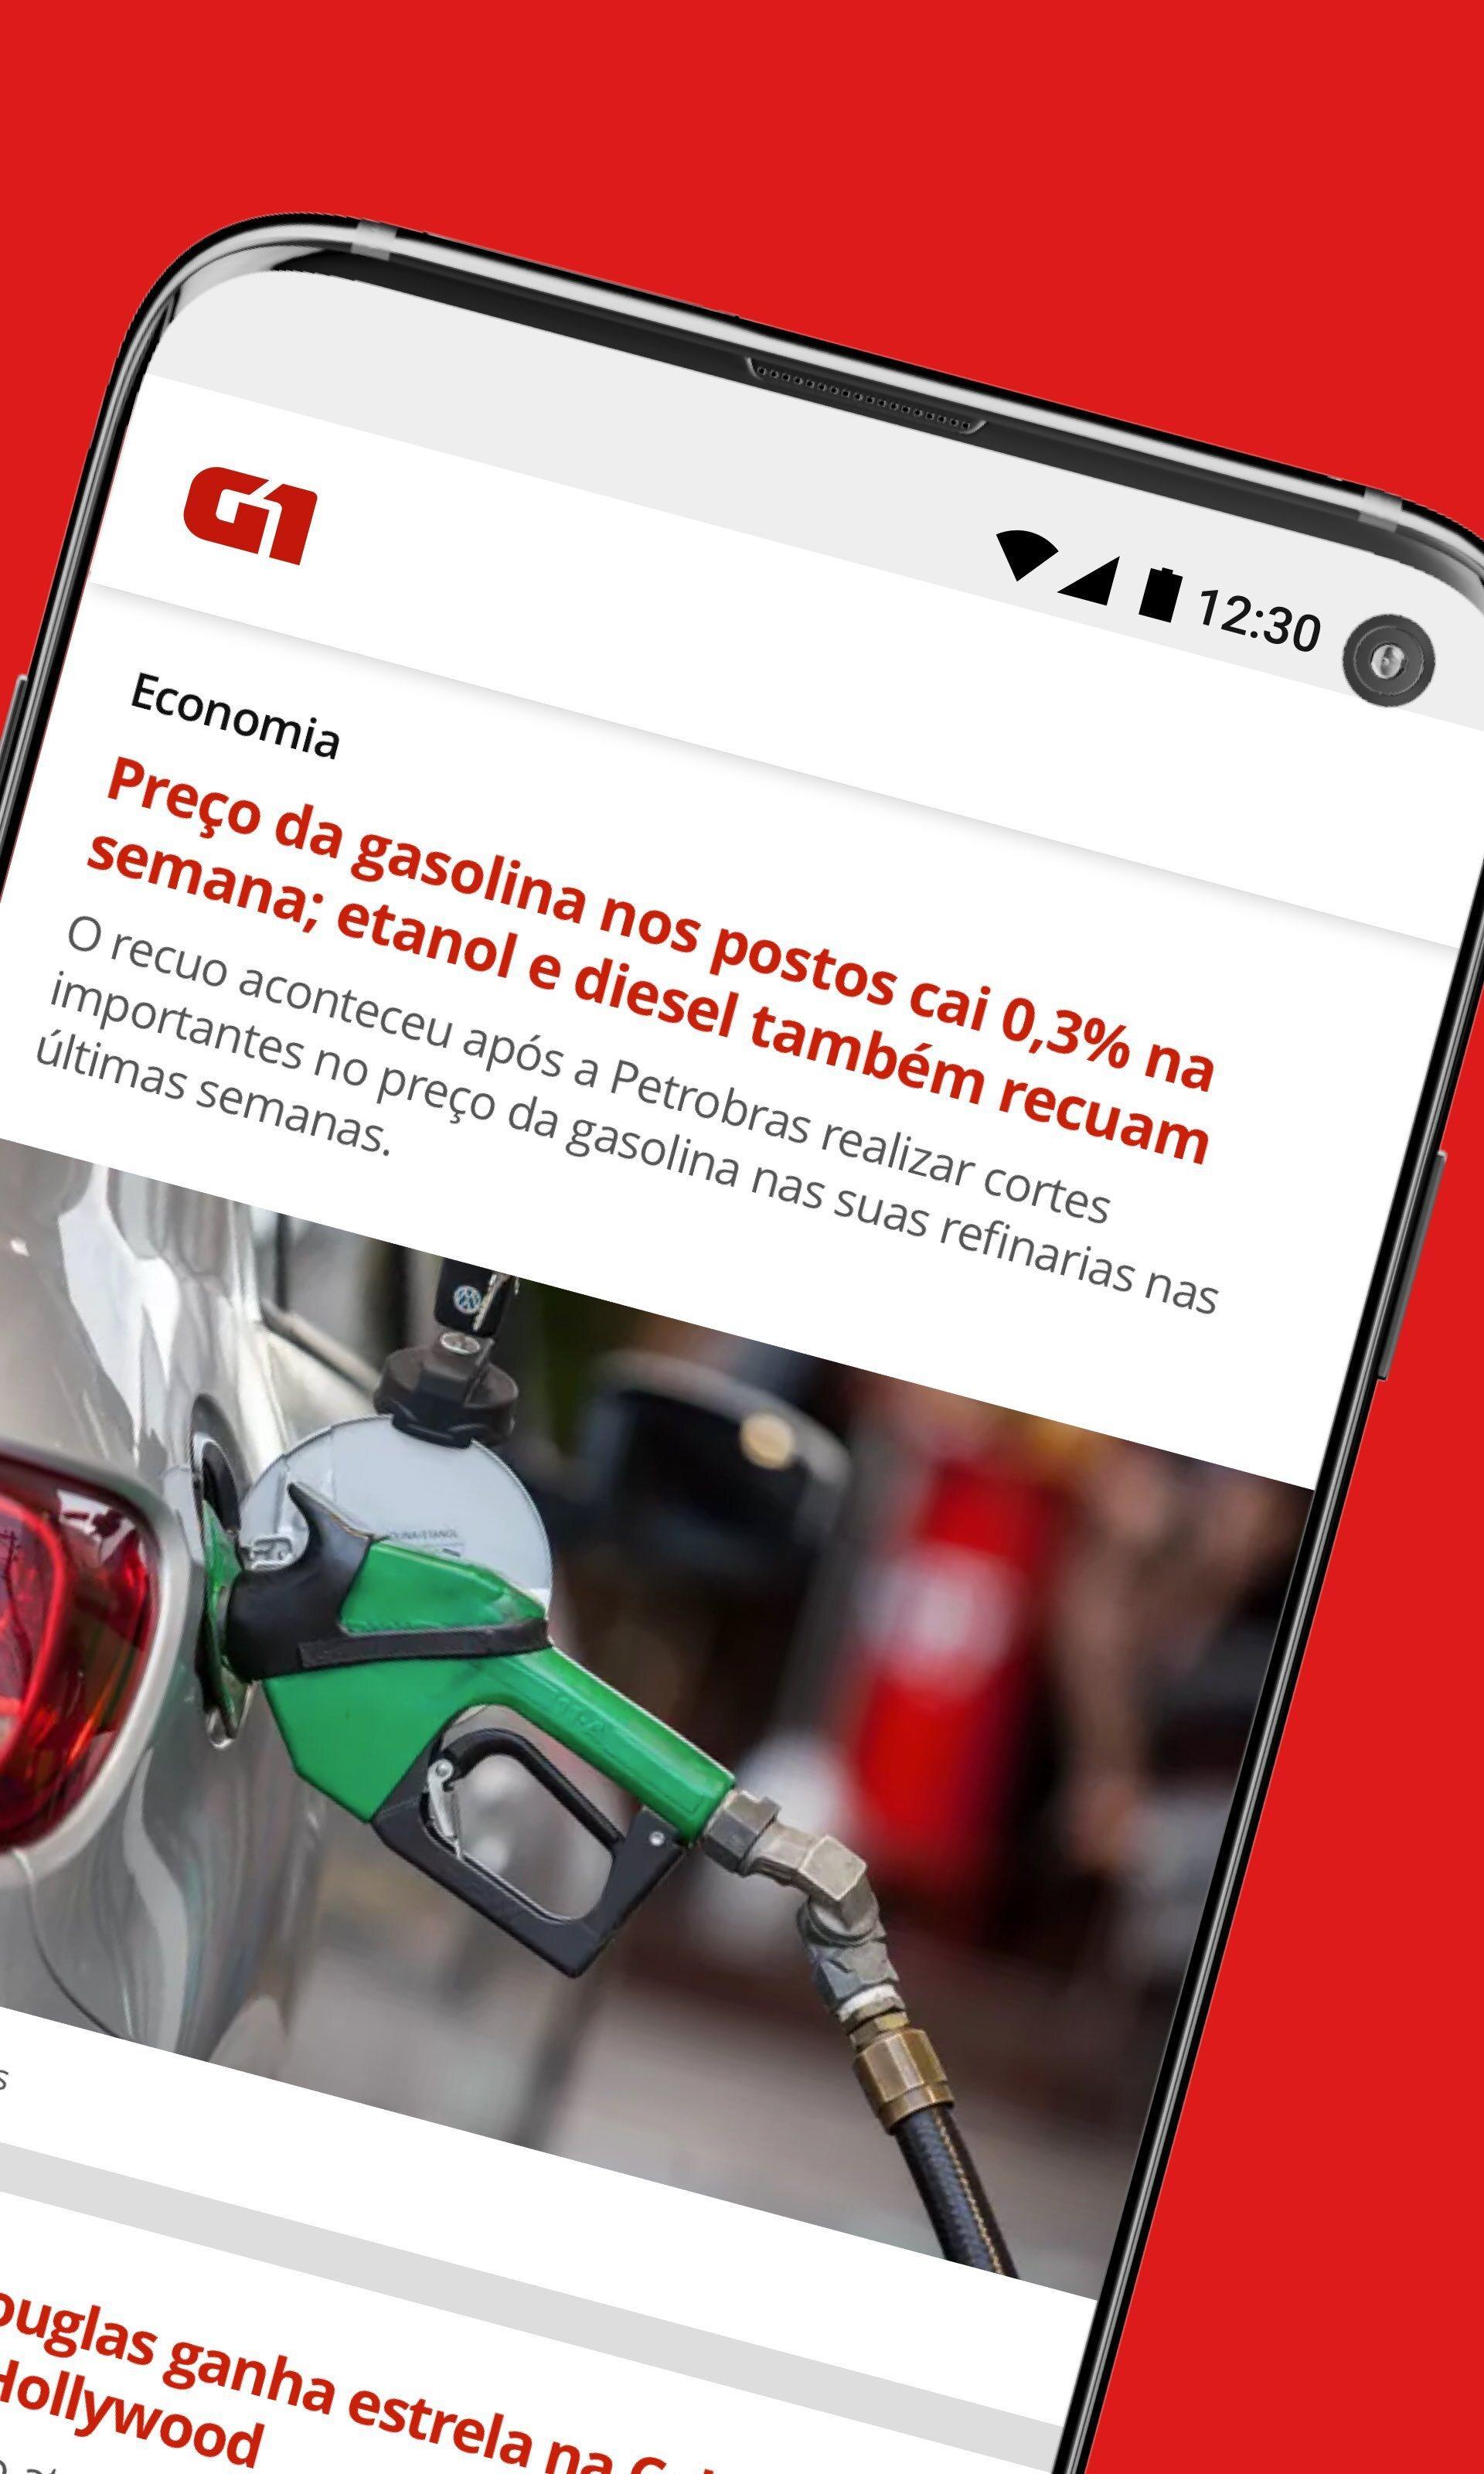 G1 – O Portal de Notícias da Globo